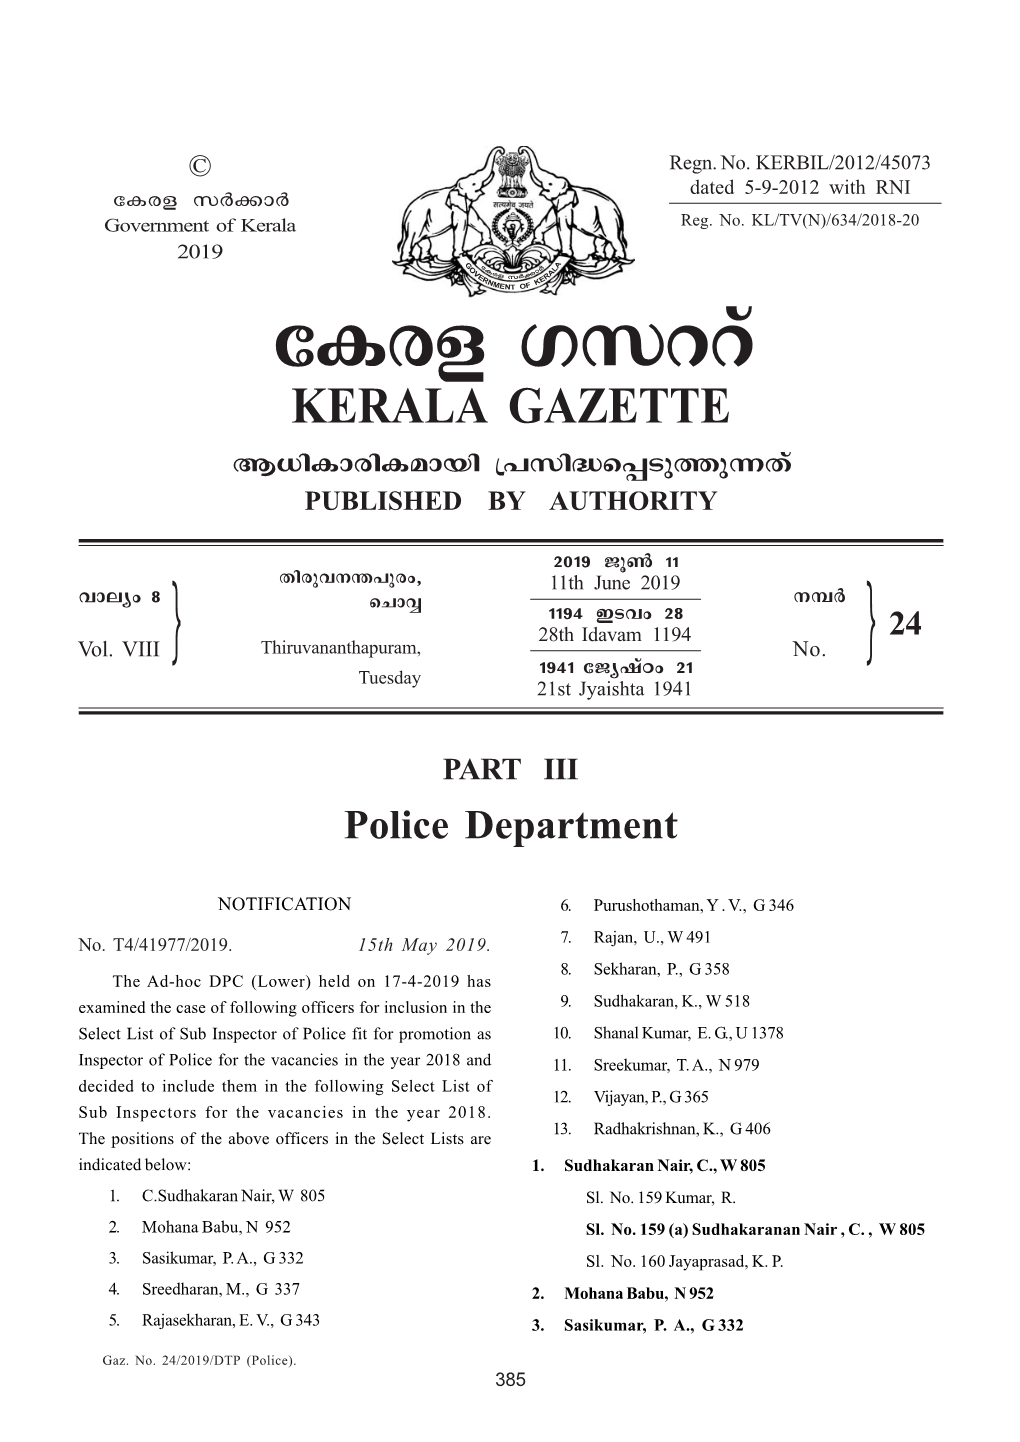 Gaz. No. 24 .Police)